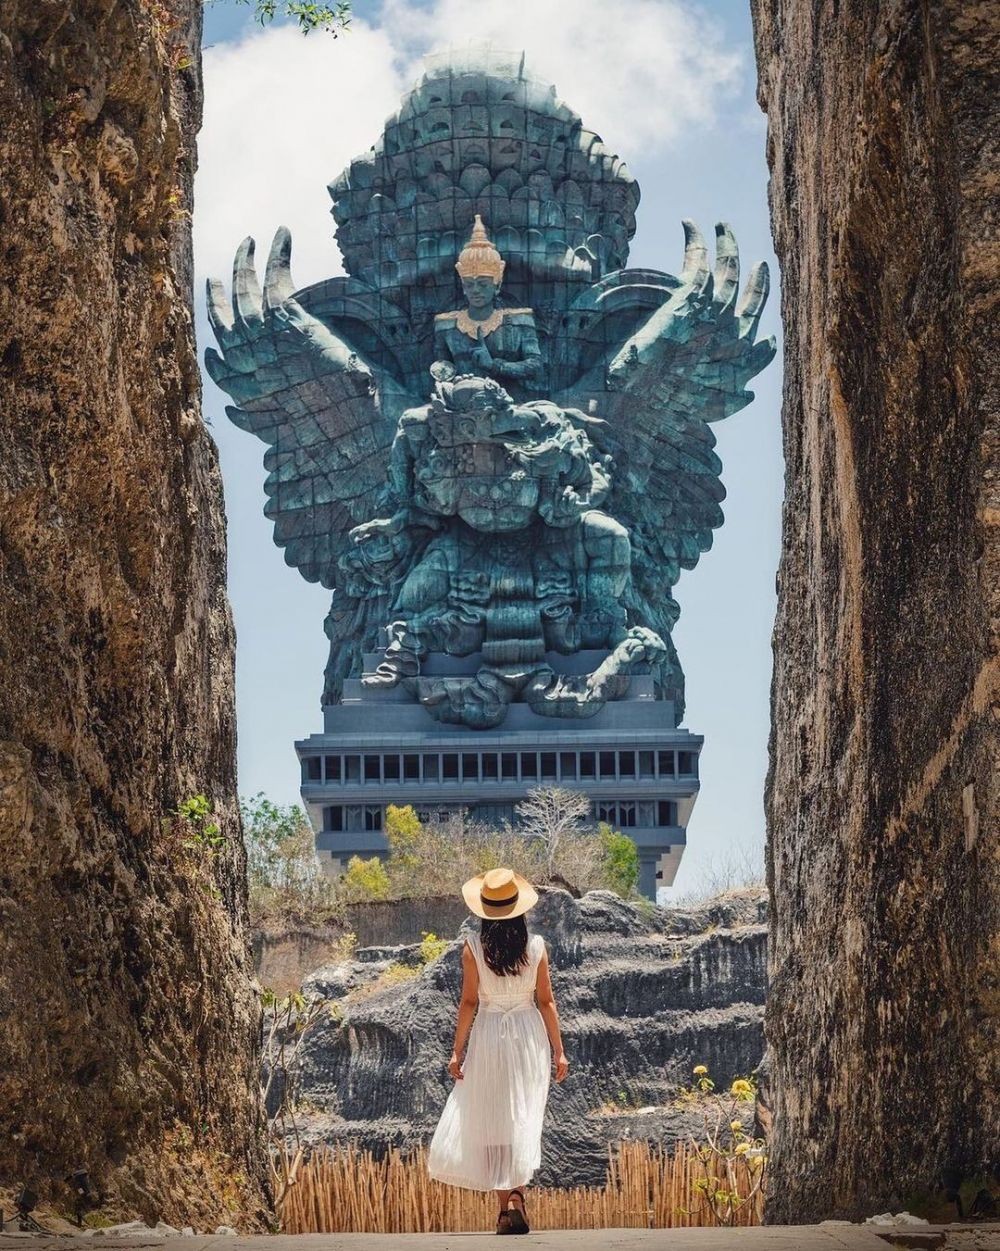 Liburan Ke Luar Negeri Tanpa Keluar Negeri, Bisa ! 10 Destinasi Wisata Bali Yang Mirip Dengan Destinasi Luar Negeri 4